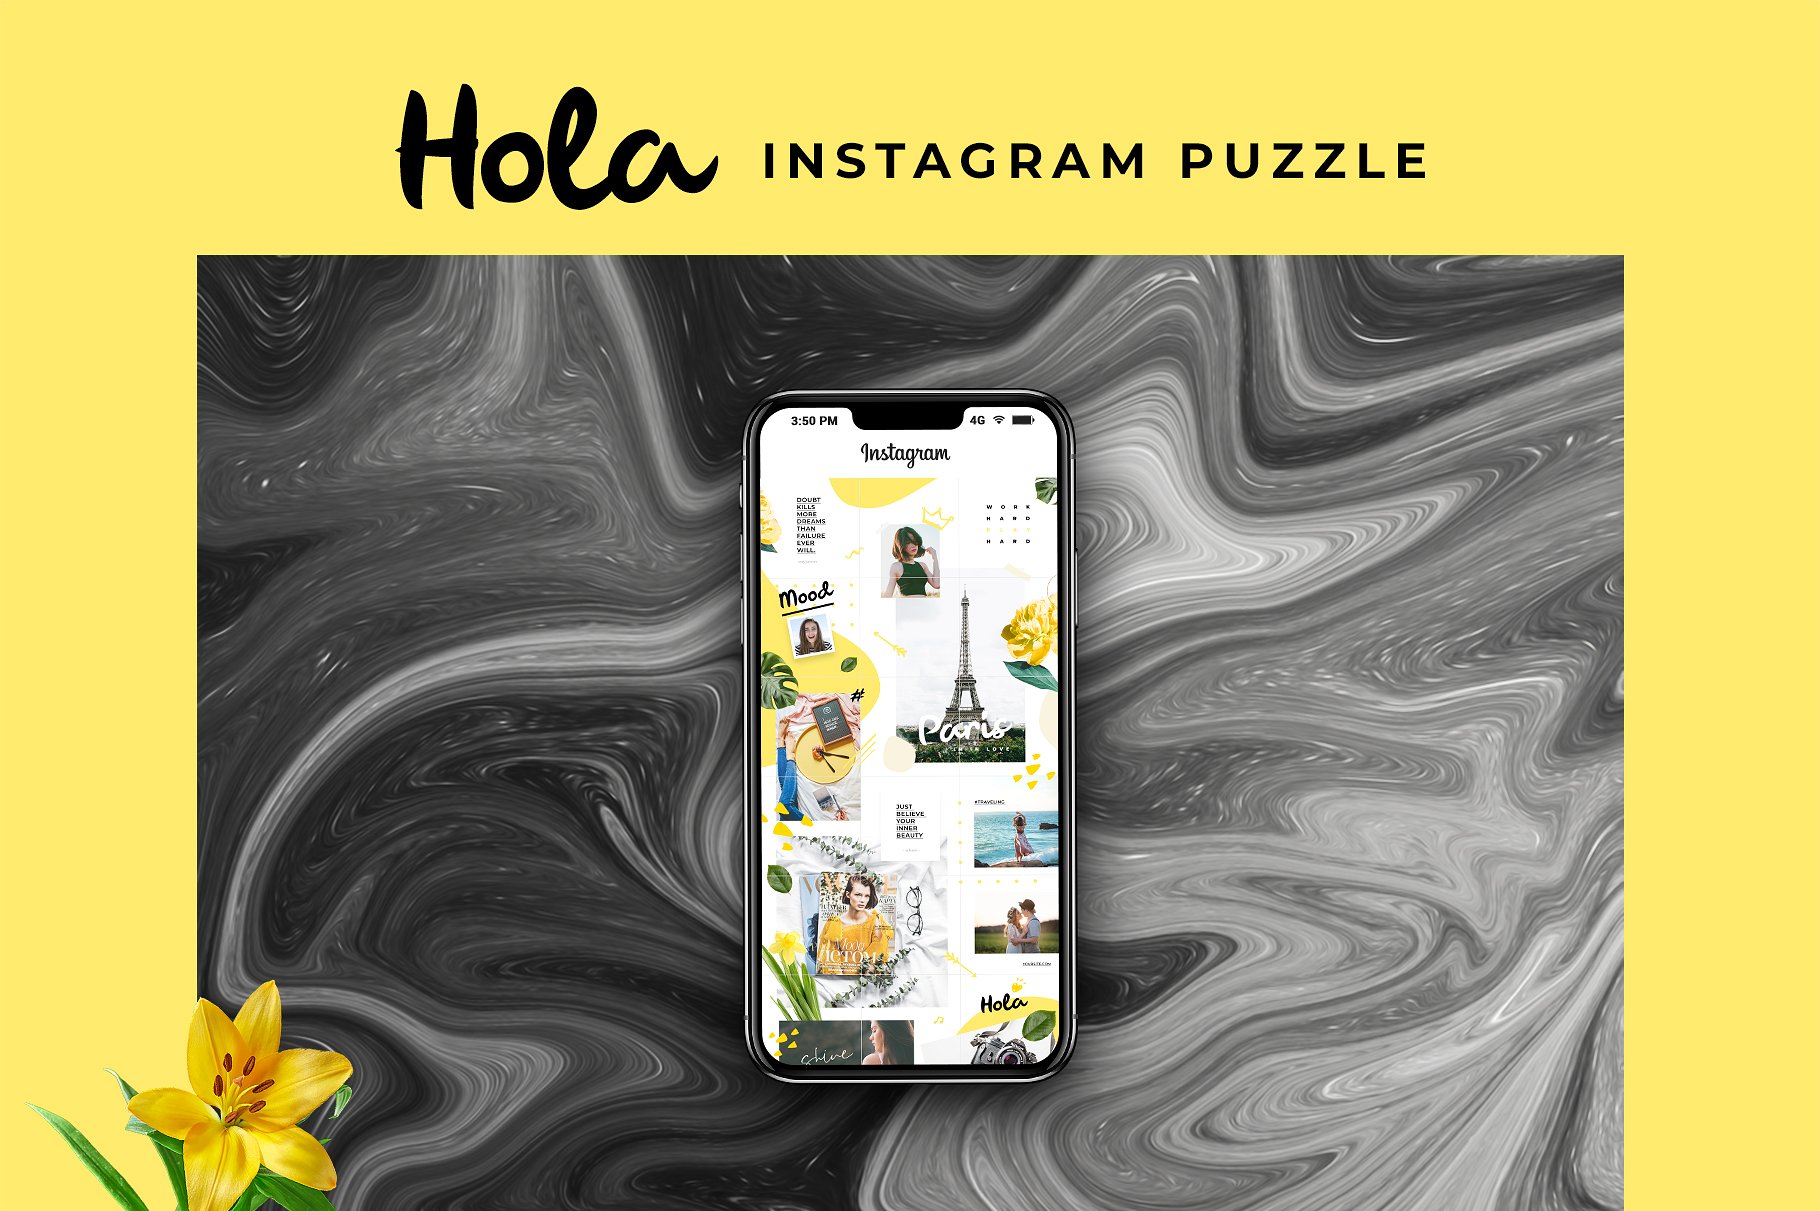 时尚极简的Instagram社交媒体模板第一素材精选 Instagram Puzzle – Hola [psd]插图(2)